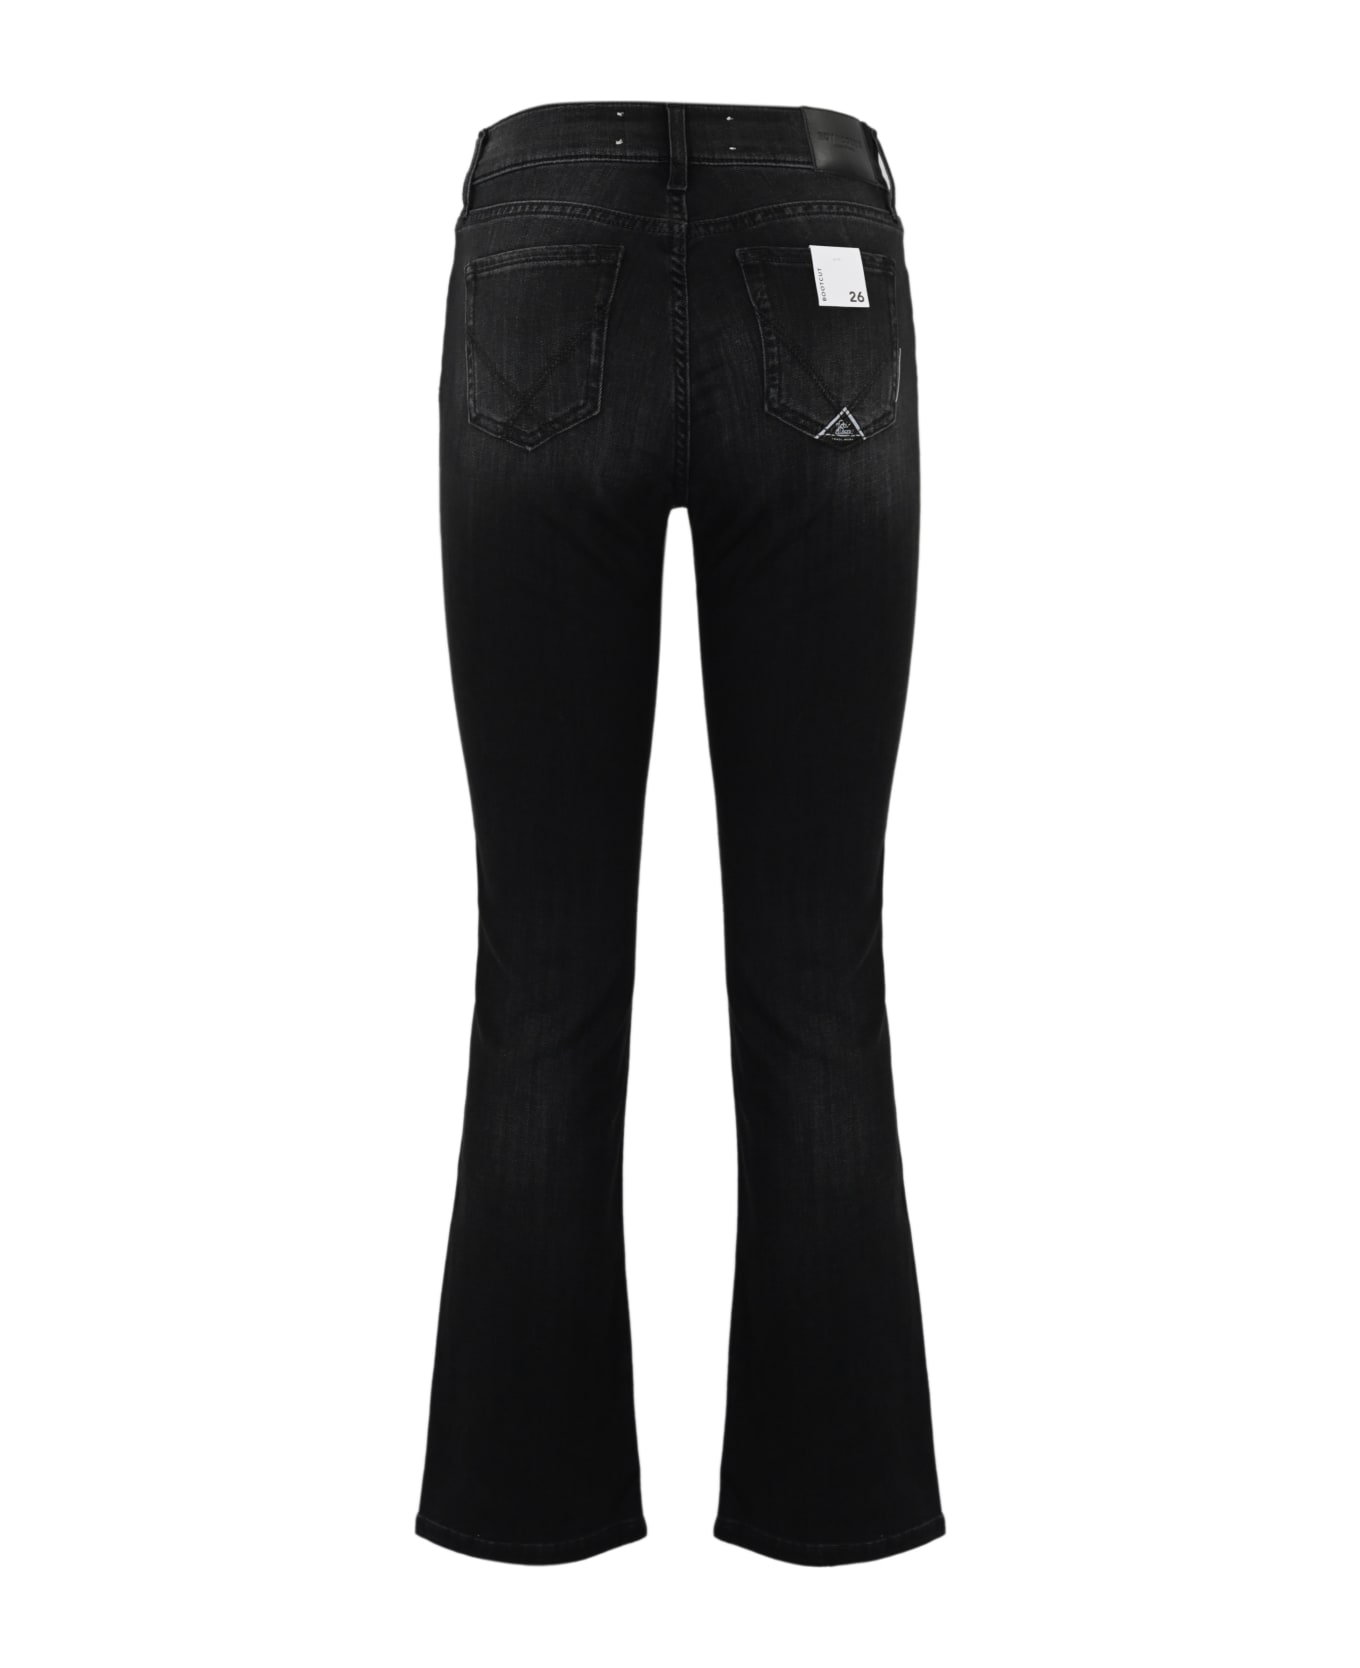 Roy Rogers Flare Jeans In Black Denim - Denim black ボトムス